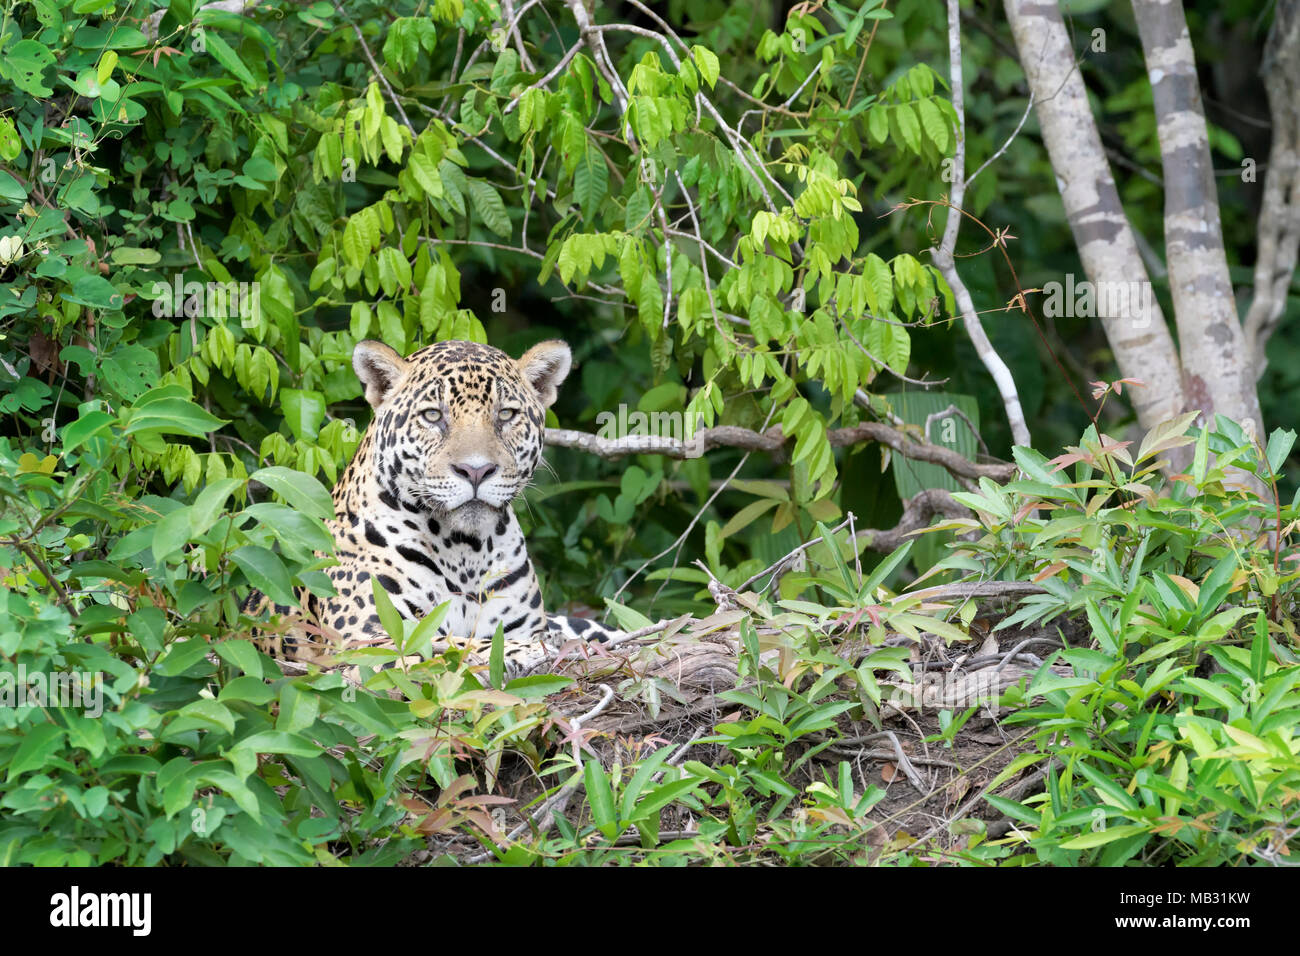 Jaguar (Panthera onca) couchée sur berge, dans jungle, looking at camera, Pantanal, Mato Grosso, Brésil Banque D'Images